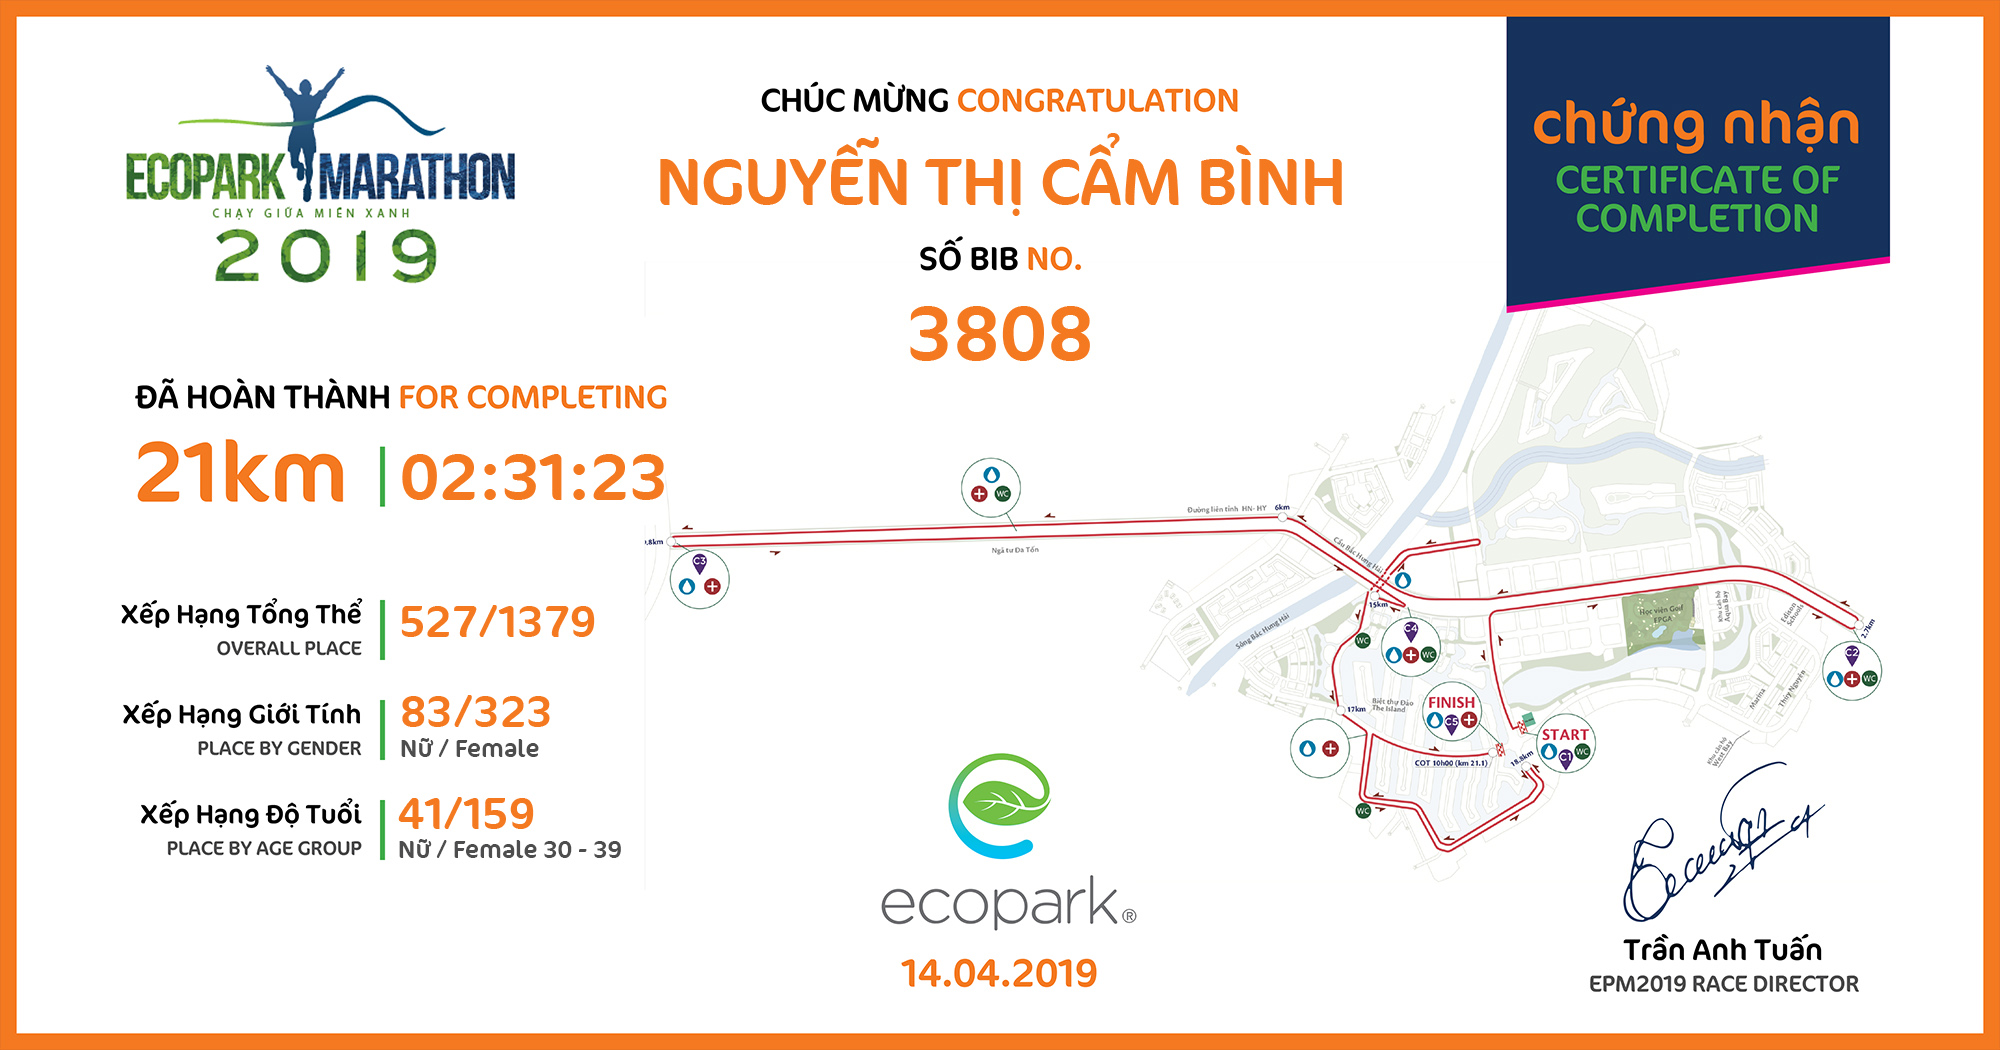 3808 - Nguyễn Thị Cẩm Bình